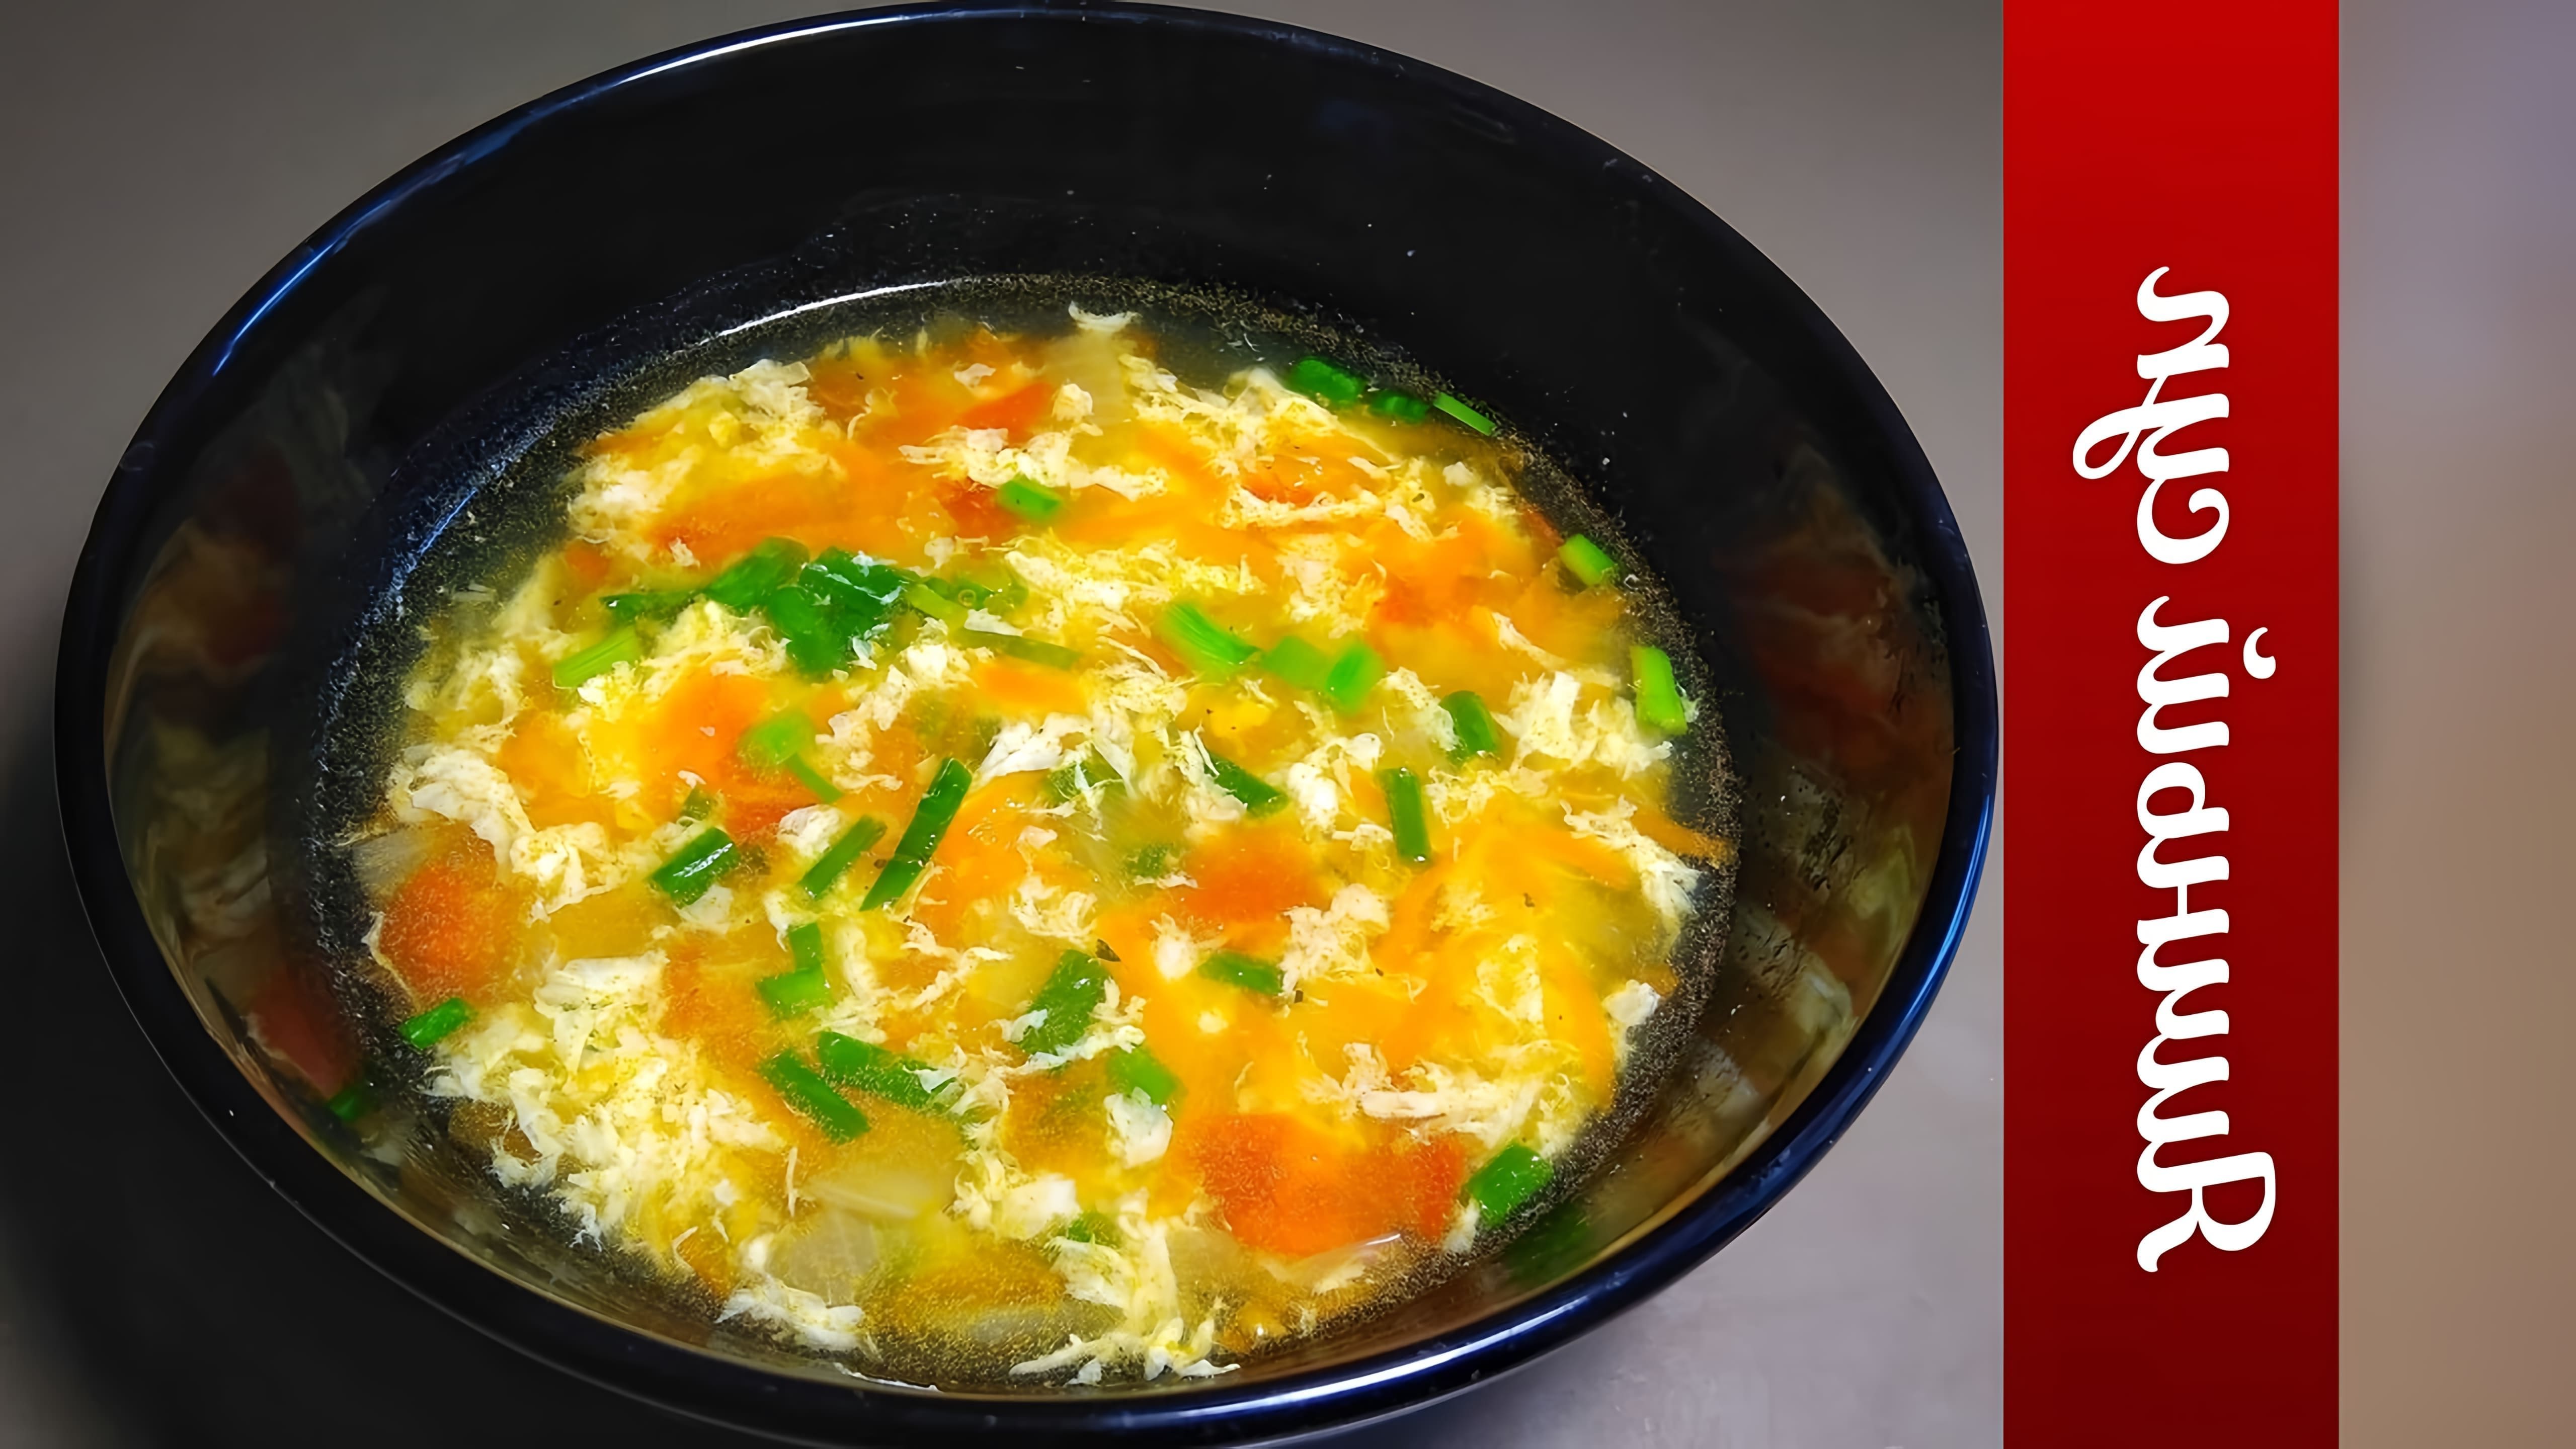 В этом видео демонстрируется процесс приготовления яичного супа